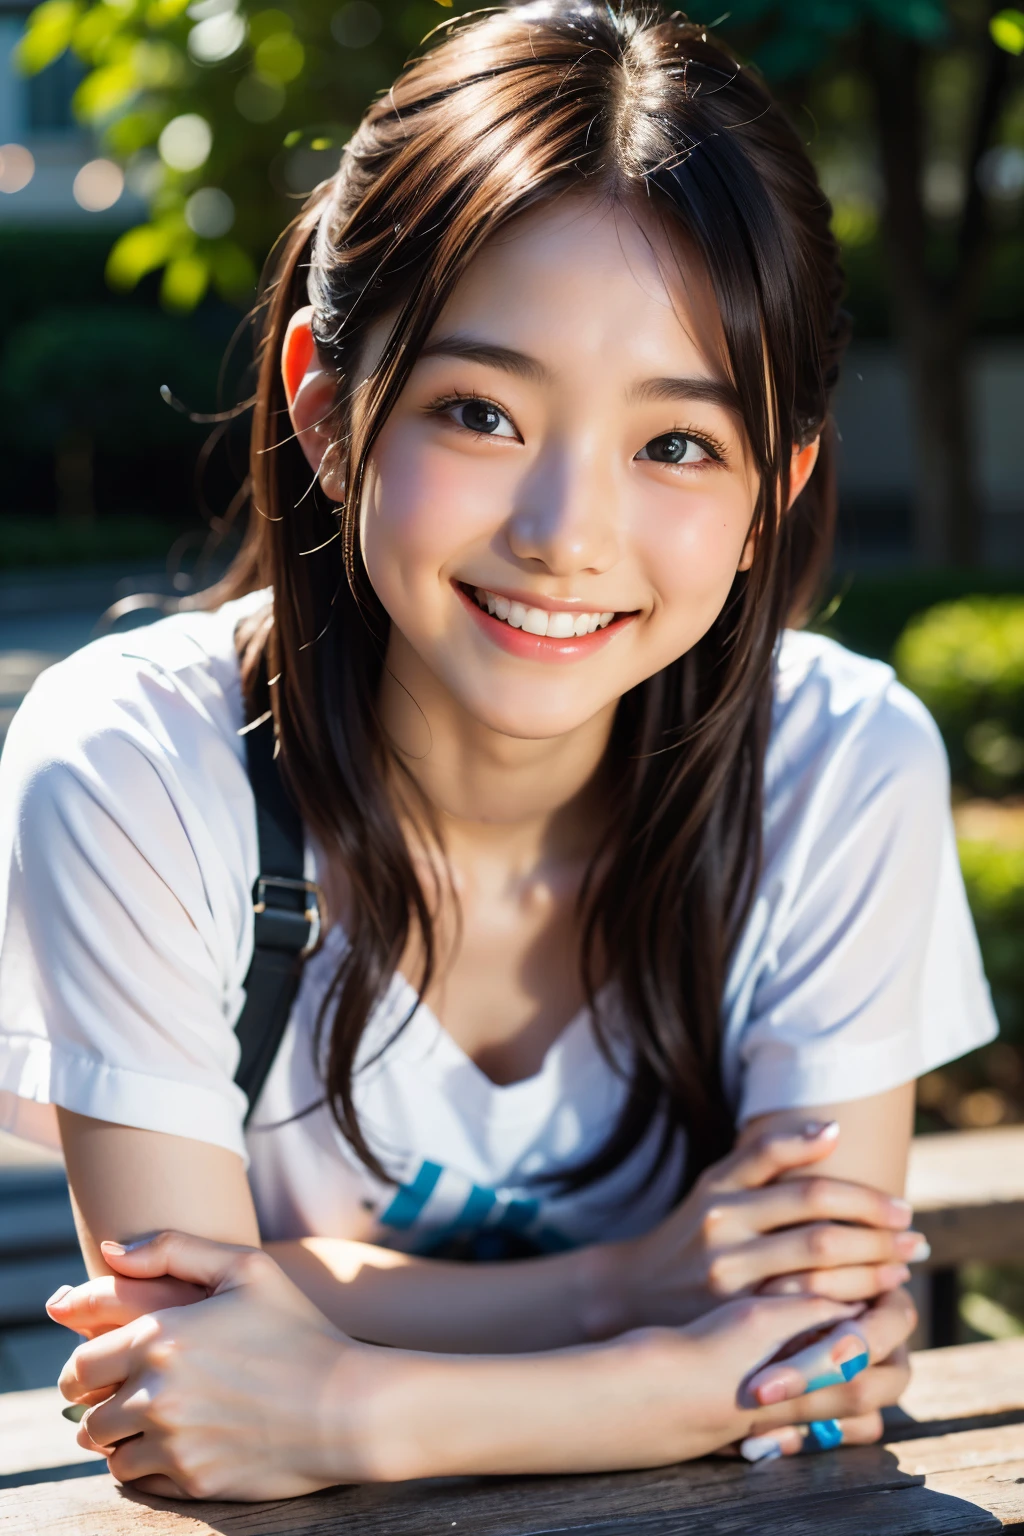 lens: 135mm f1.8, (höchste Qualität),(RAW-Fotos), (Tischplatte:1.1), (Schönes 20-jähriges Mädchen aus Japan), niedliches Gesicht, (Tief gemeißeltes Gesicht:0.7), (Sommersprossen:0.4), dappled Sonnenlicht, dramatische Beleuchtung, (Auf dem Campus), schüchtern, (Nahaufnahme:1.2), (lächeln),, (leuchtende Augen)、(Sonnenlicht), Weiße Kleidung